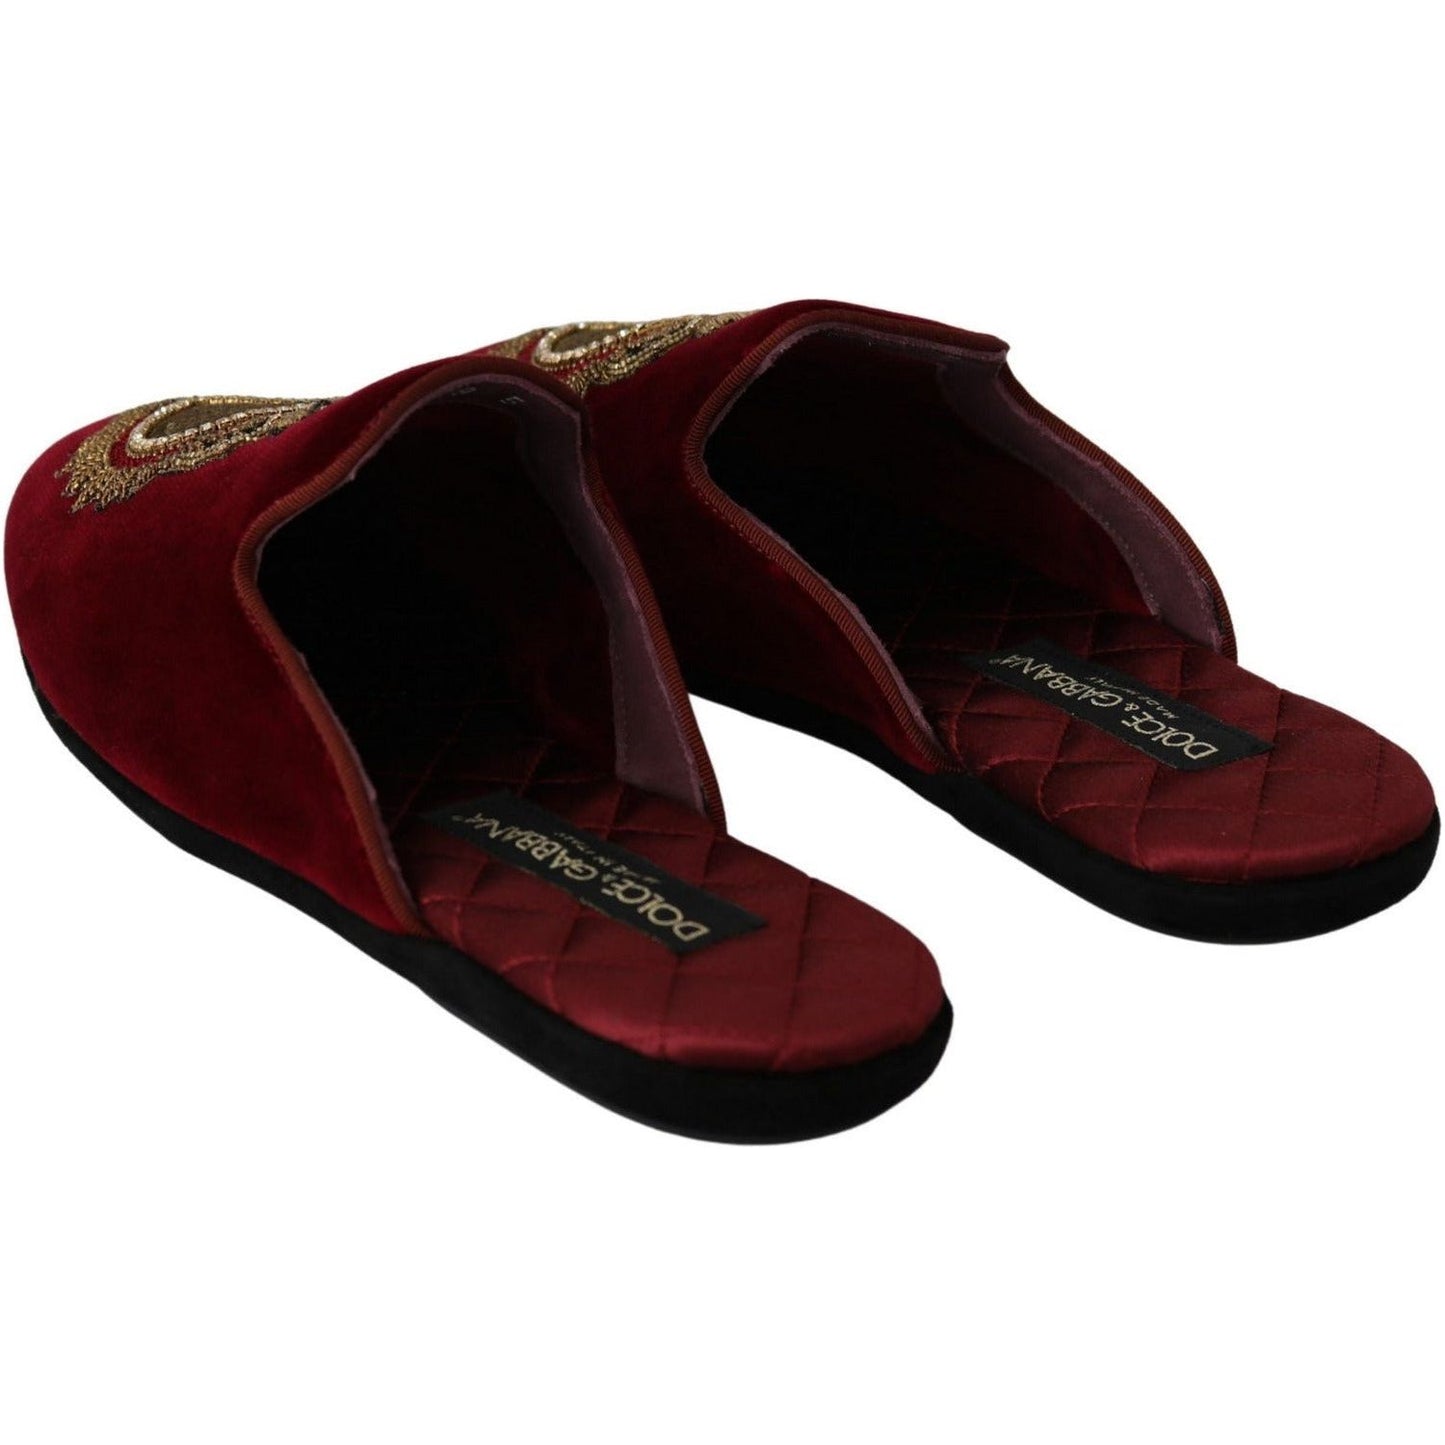 Dolce & Gabbana Red Velvet Embroidered Slides red-velvet-sacred-heart-embroidery-slides-shoes IMG_0094-1-scaled-b266aa4f-732.jpg